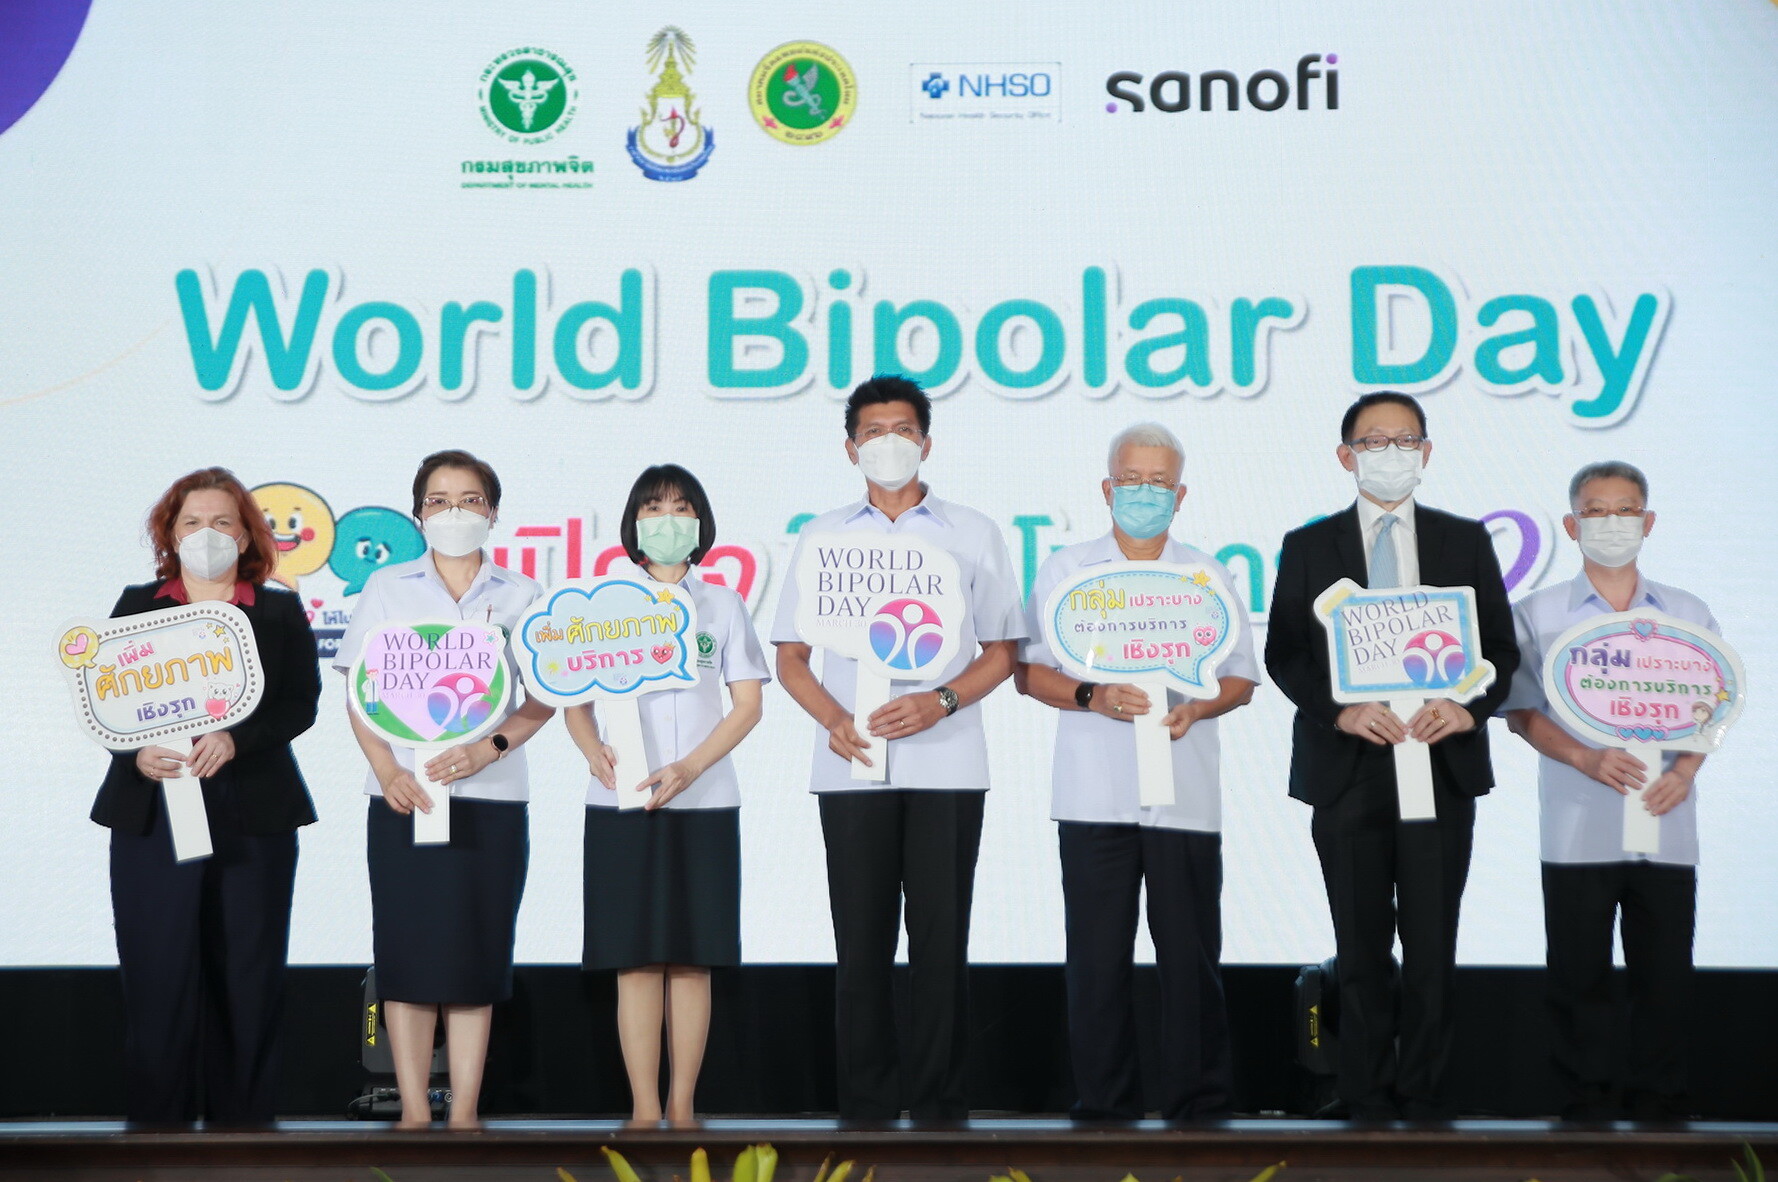 กรมสุขภาพจิต ร่วมกับสมาคมจิตแพทย์แห่งประเทศไทย และเครือข่ายพันธมิตร รวมพลังสนับสนุนผู้ป่วยไบโพลาร์ให้เข้าถึงการรักษาอย่างยั่งยืน ในงาน World Bipolar Day 2022